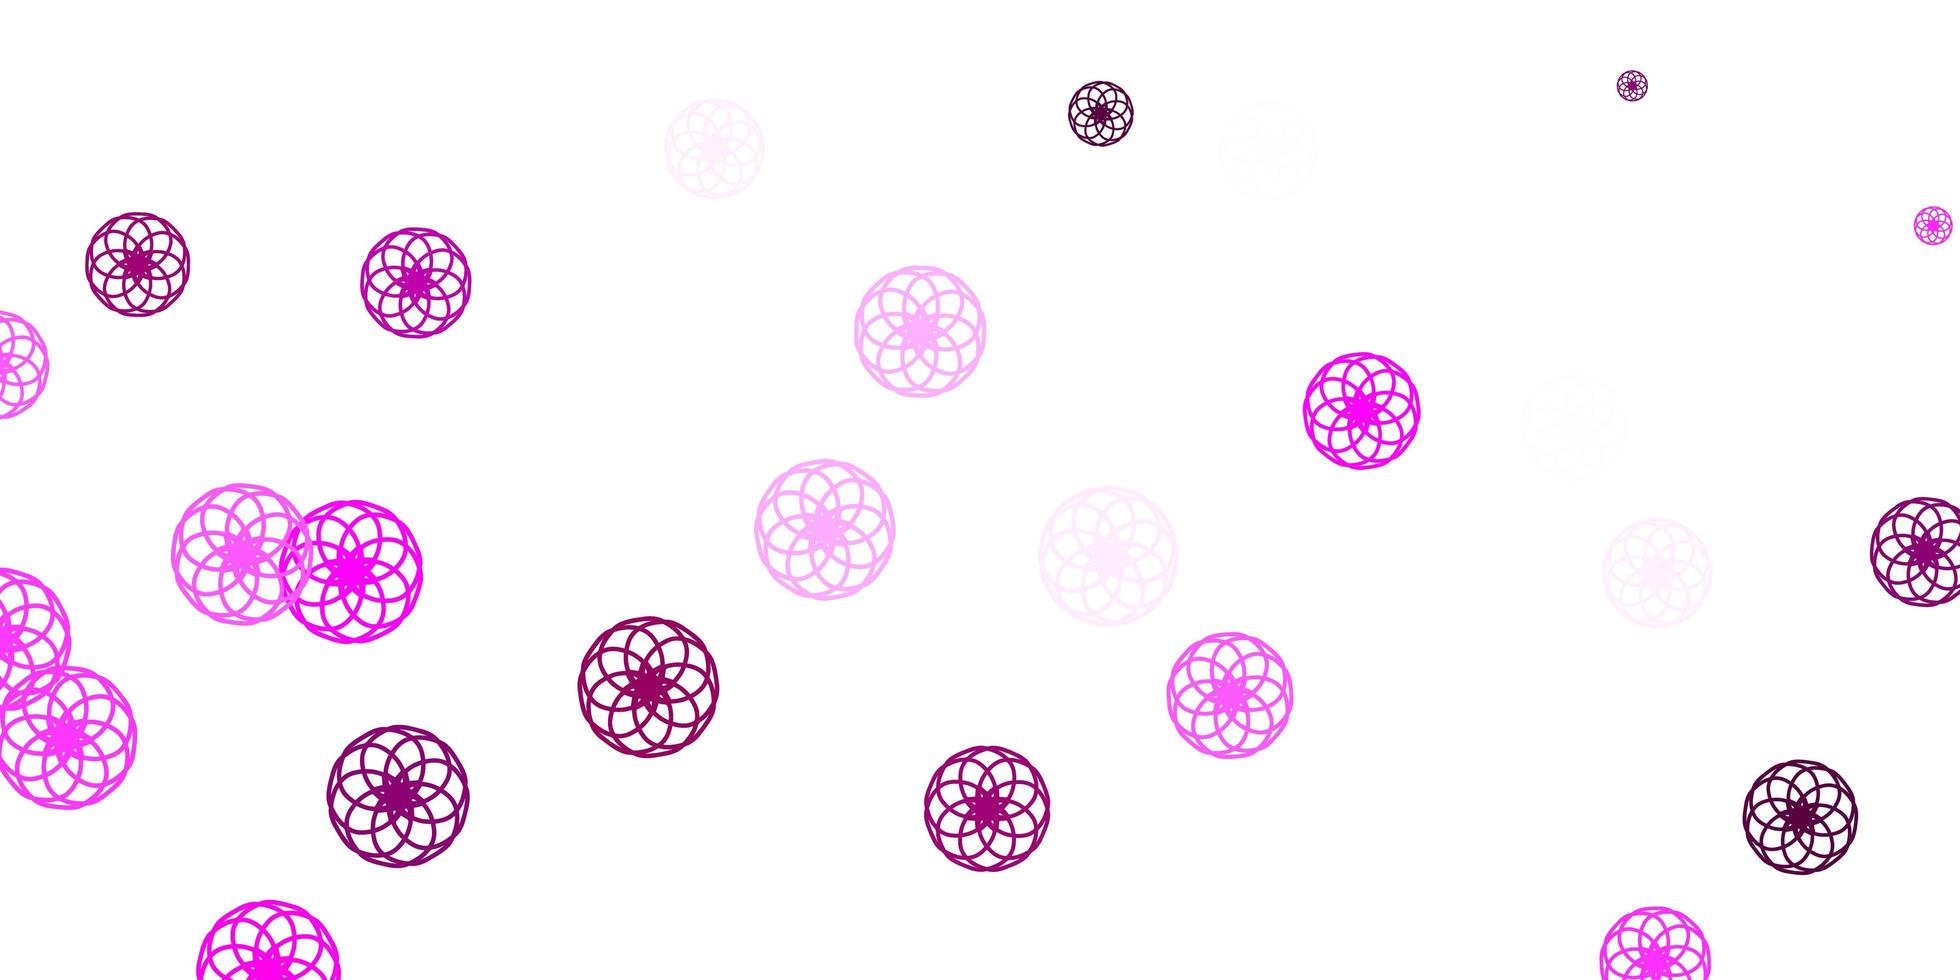 modelo de vetor rosa claro com círculos.